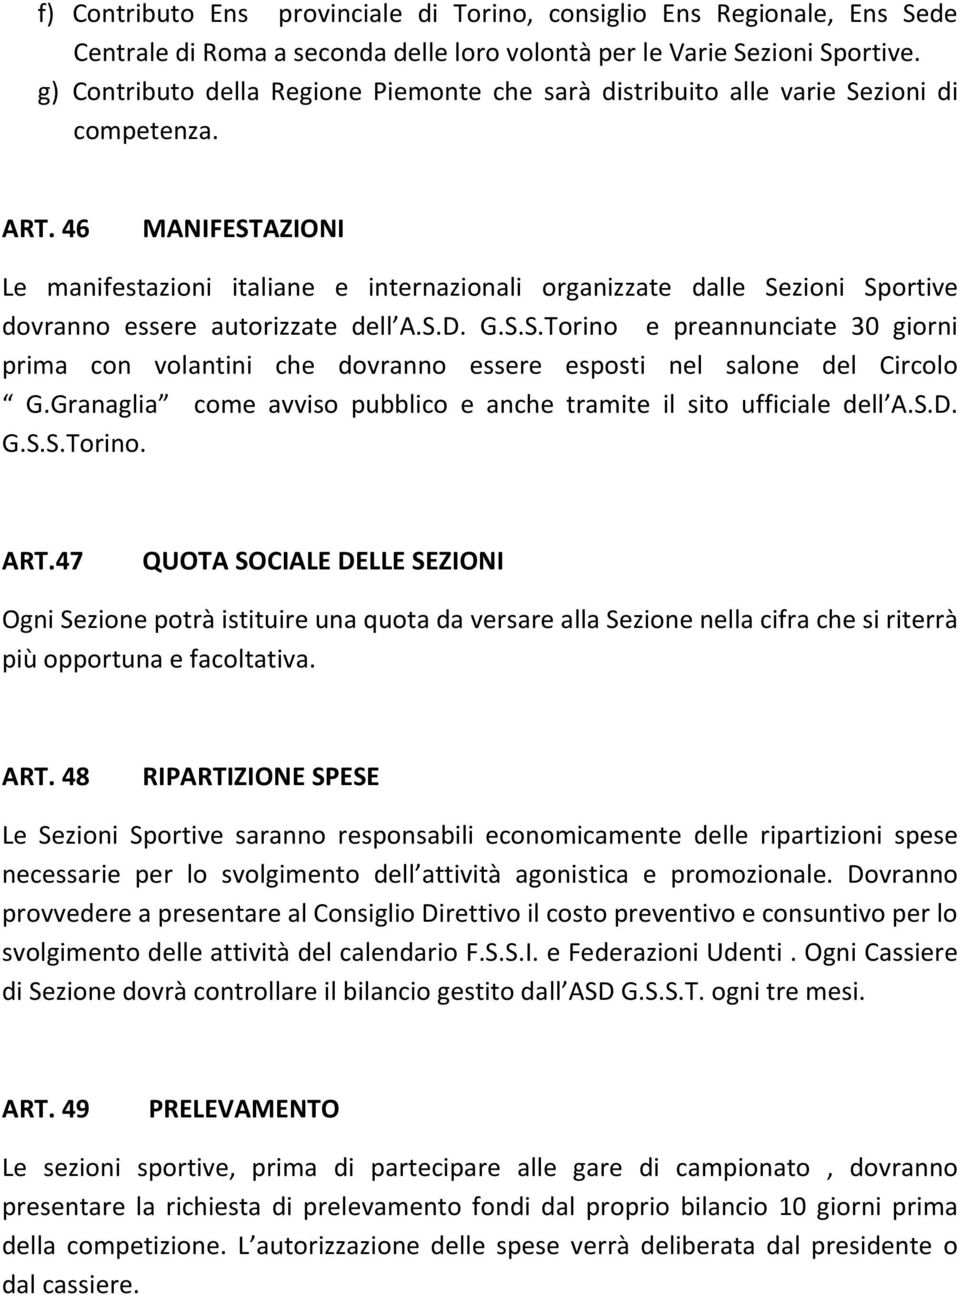 46 MANIFESTAZIONI Le manifestazioni italiane e internazionali organizzate dalle Sezioni Sportive dovranno essere autorizzate dell A.S.D. G.S.S.Torino e preannunciate 30 giorni prima con volantini che dovranno essere esposti nel salone del Circolo G.